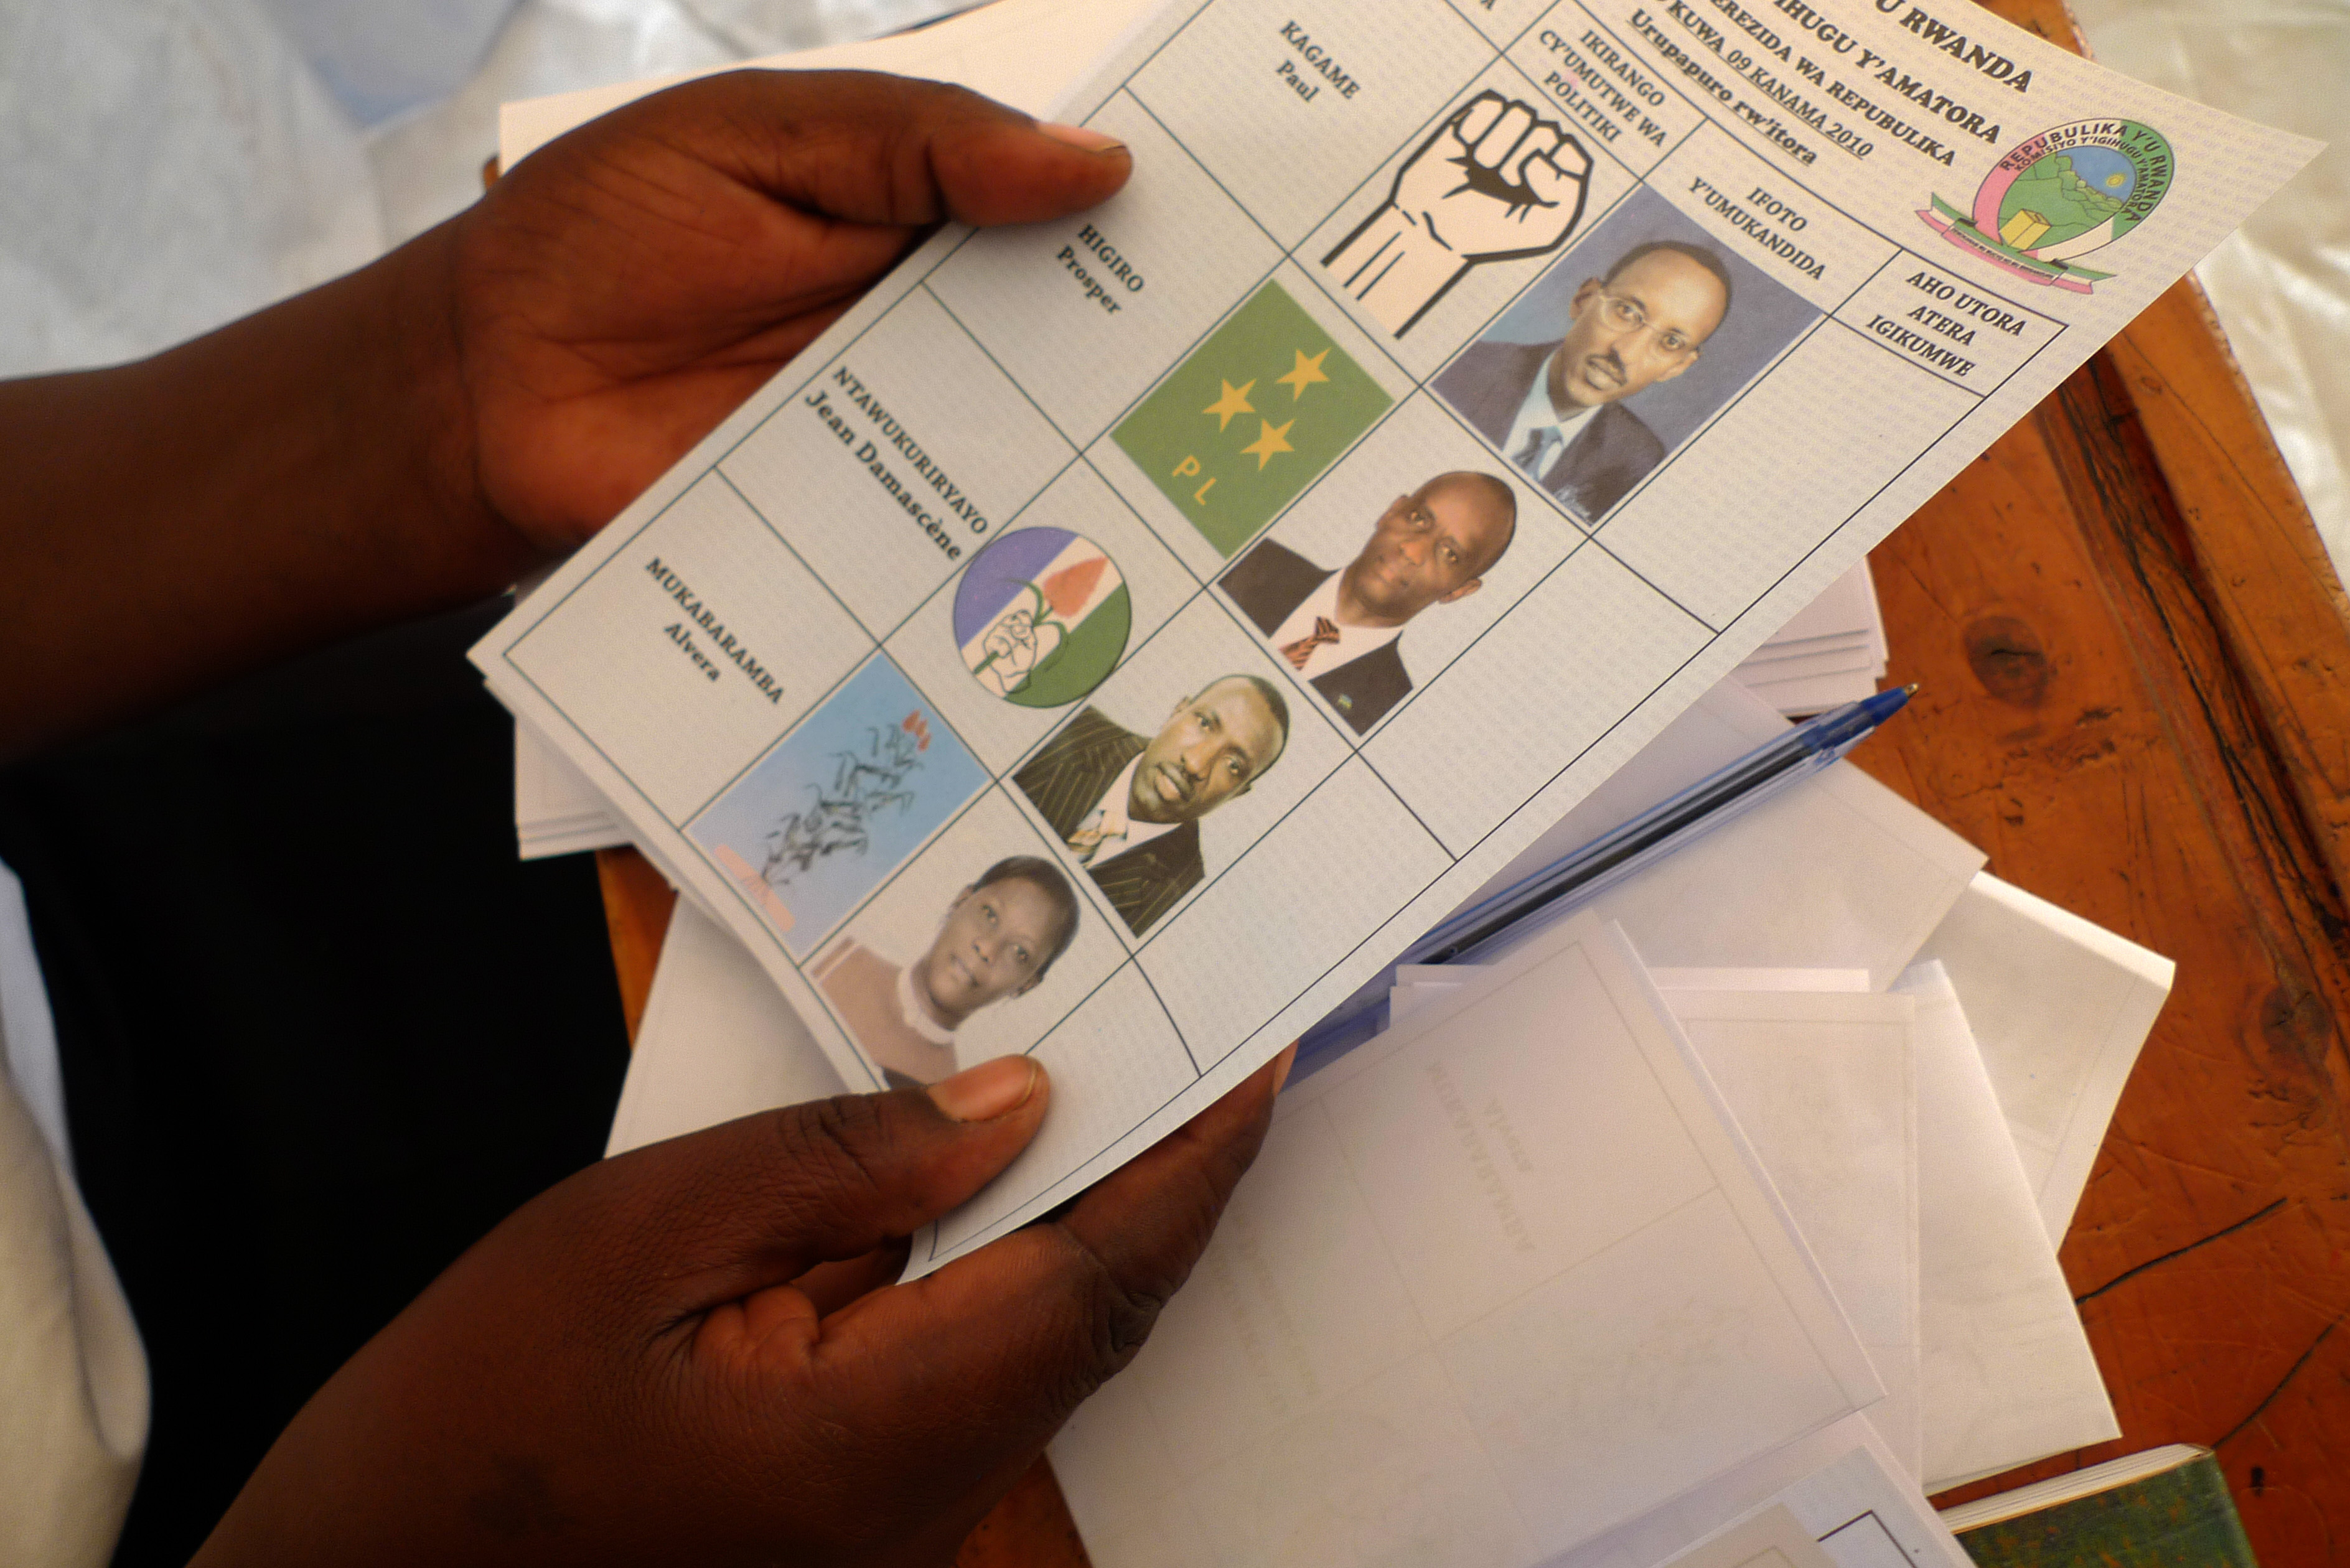 Bulletin de vote lors de l'élection présidentielle 2010